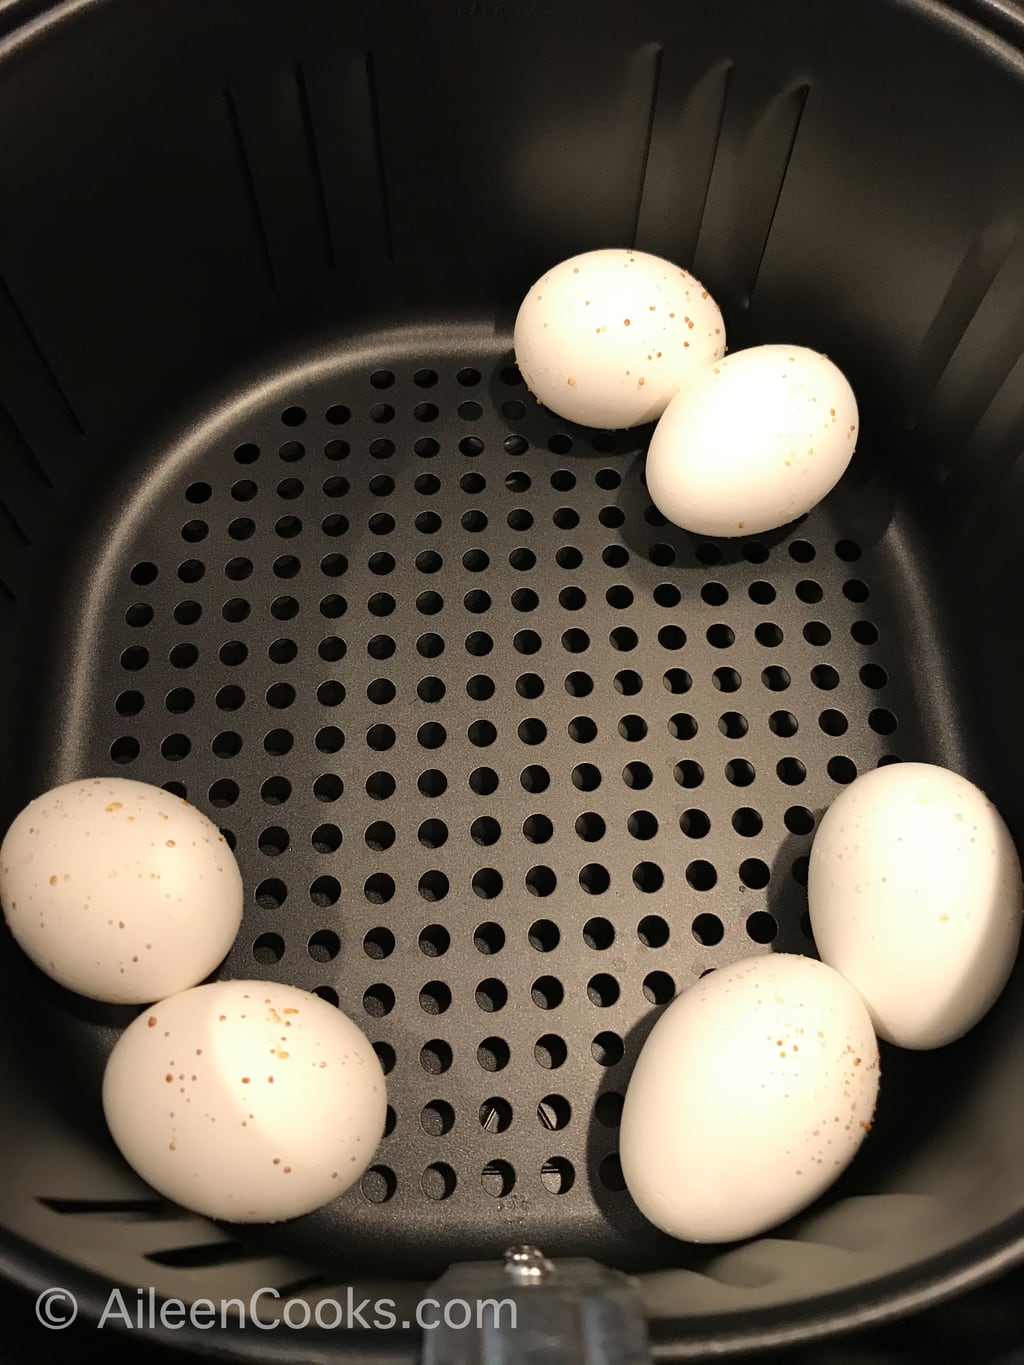 Six eggs inside of an air fryer.